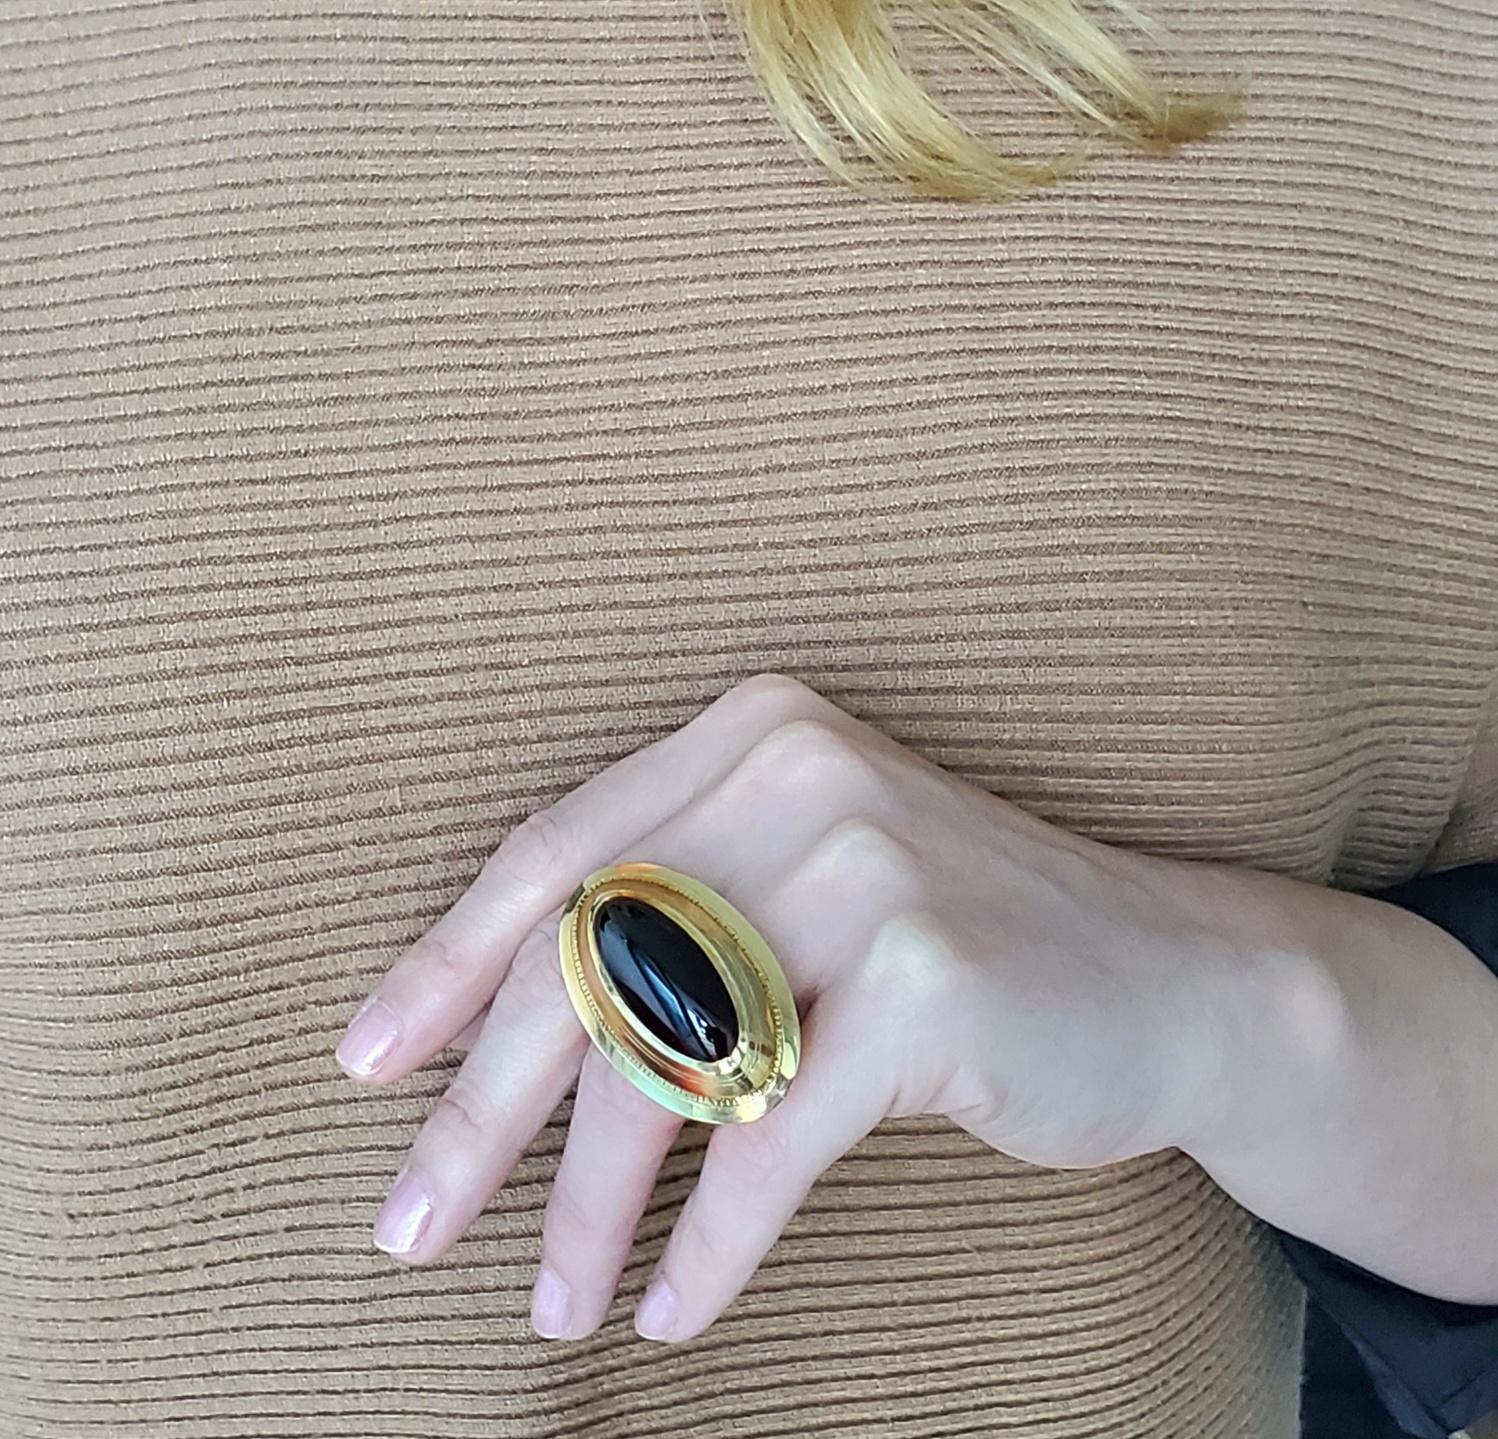 Ein skulptural anmutender Cocktailring.

Wunderschöner, übergroßer, skulpturaler Ring aus massivem 18-karätigem Gelbgold mit hochglanzpolierter Oberfläche, der einen kühnen Look hat. Dieser Ring wurde mit einem massiven Aussehen gefertigt, das in